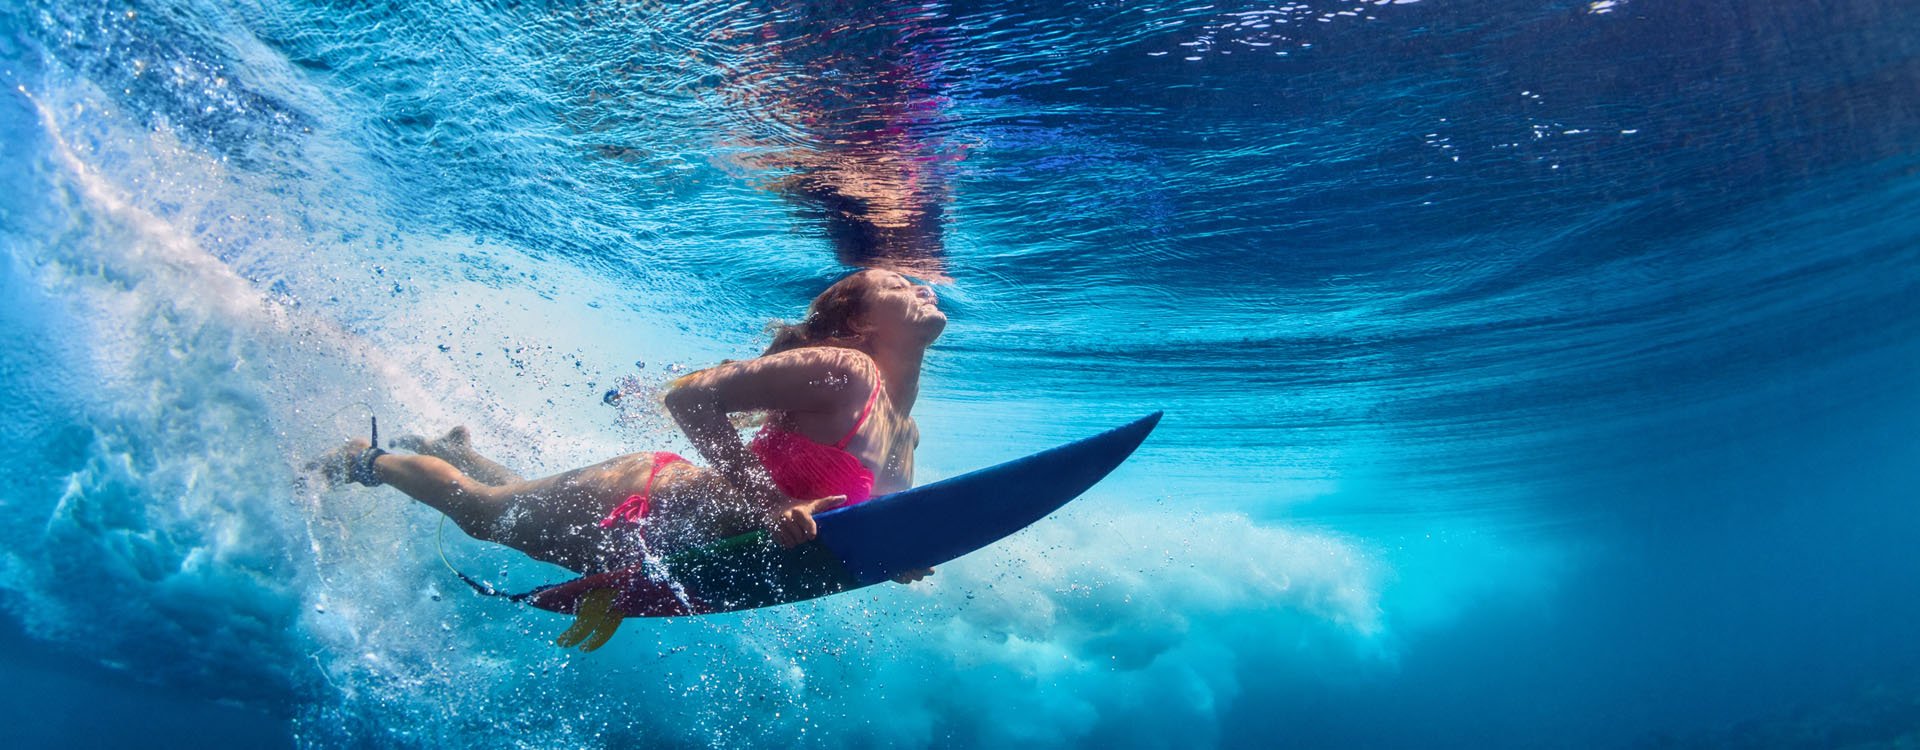 Girl in pink bikini surfing under waves